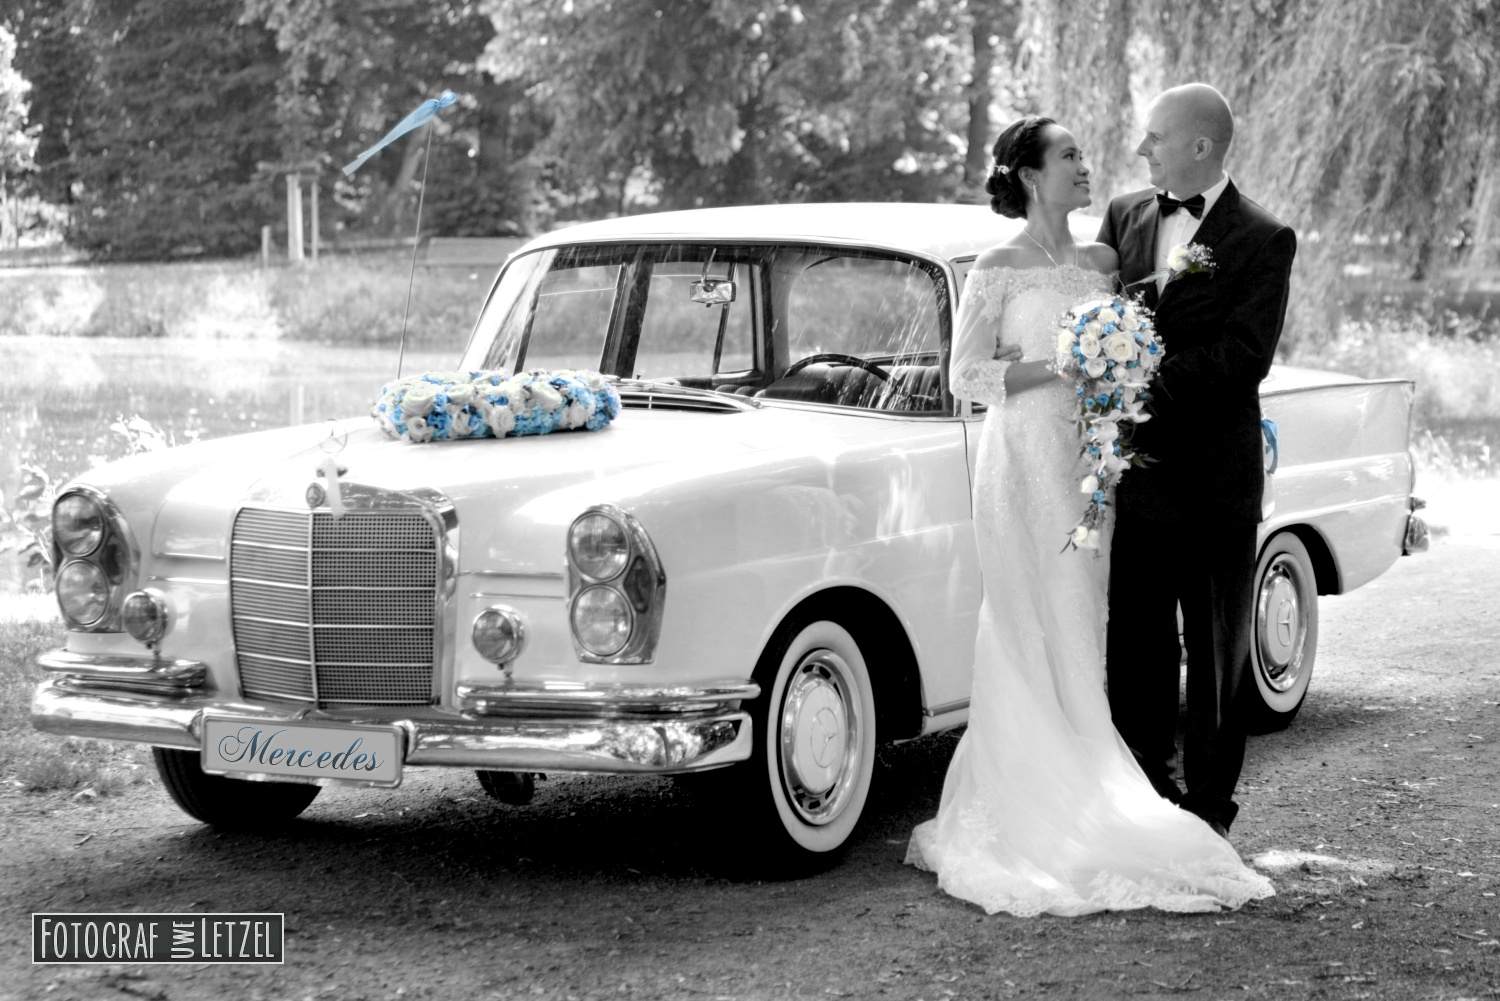 Foto: Mercedes Benz Hochzeitslimousine